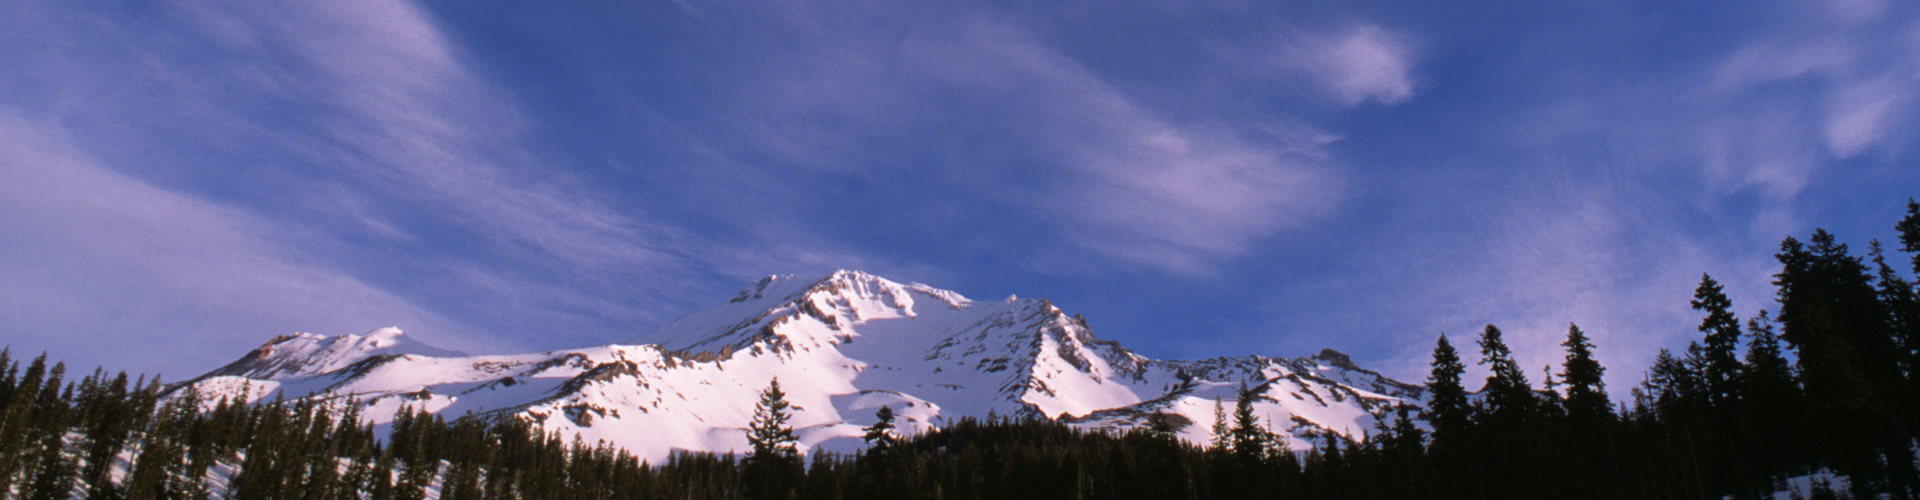 Avalanche Gulch, Mount Shasta